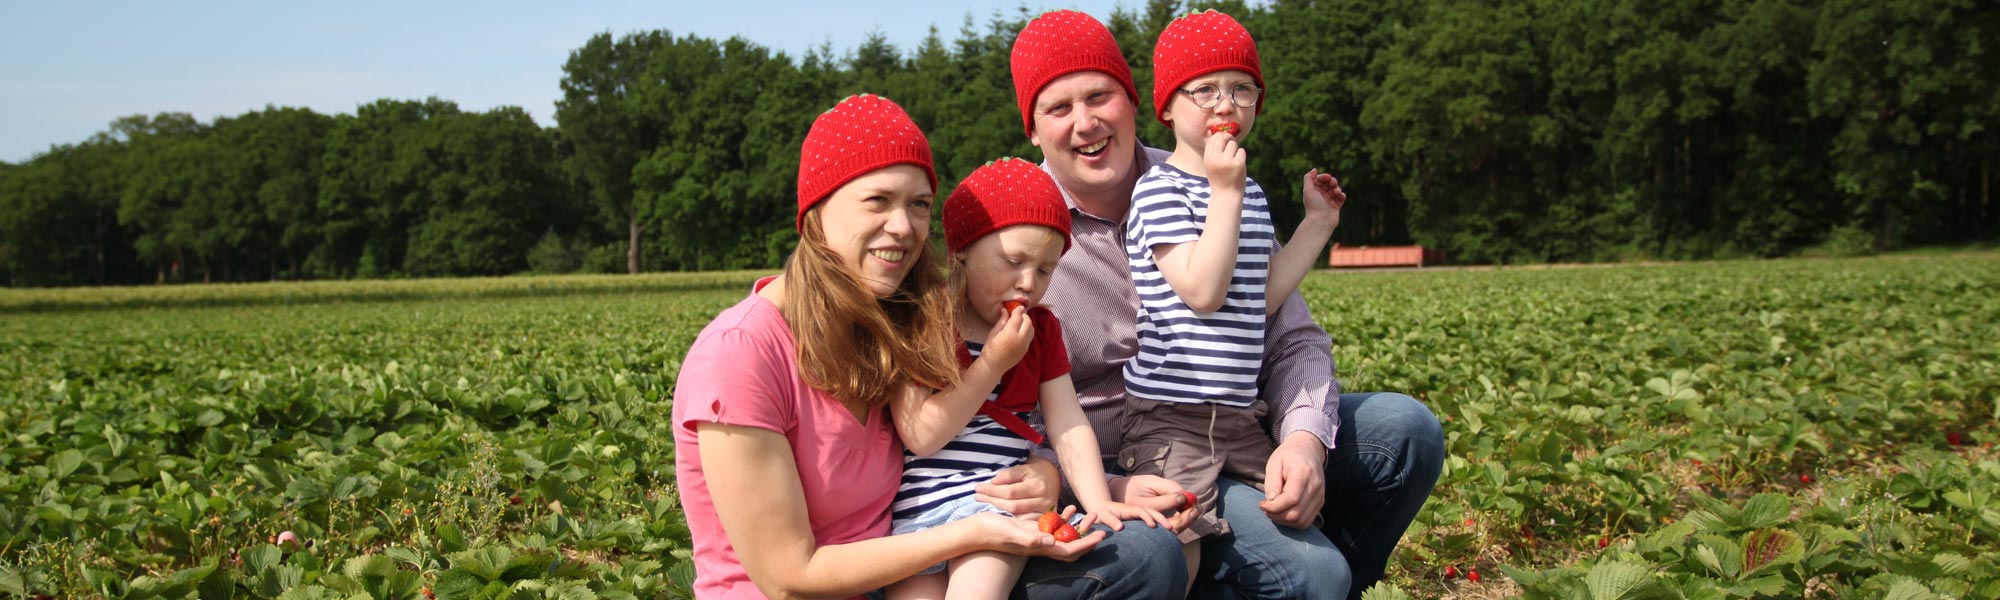 Familie Döpke mit Erdbeermützen auf einem Erdbeerfeld